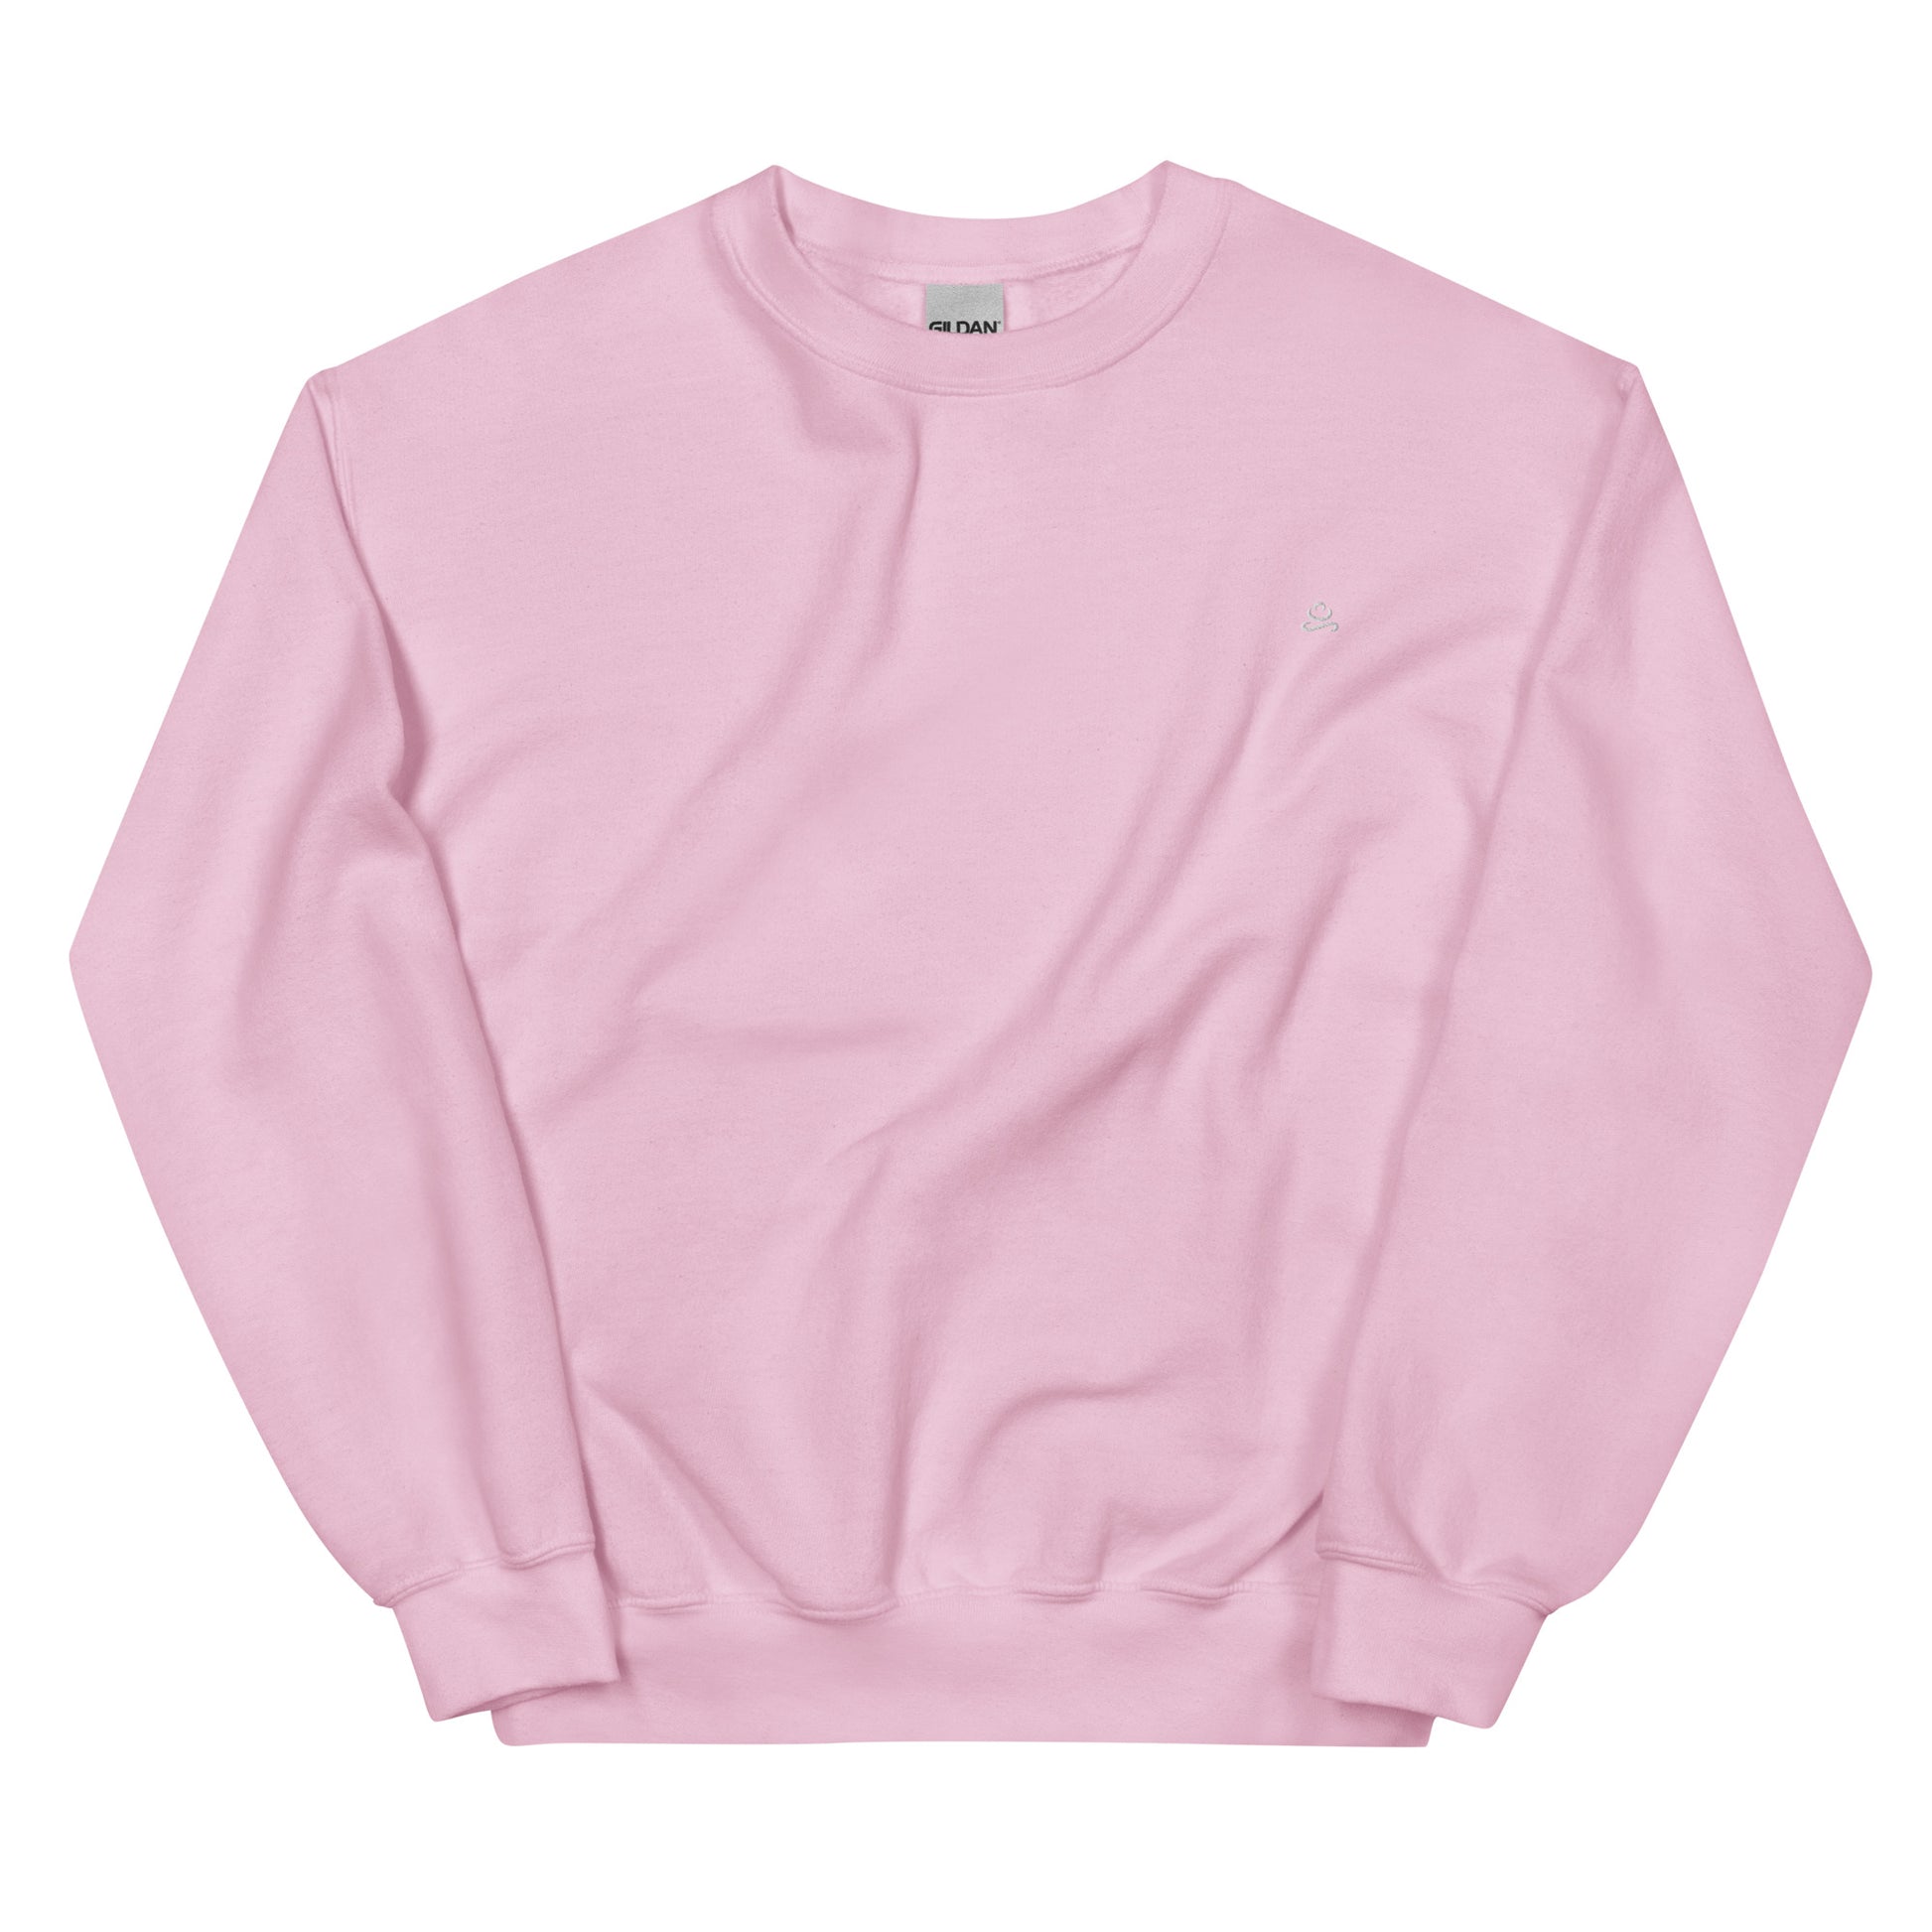 Light Pink Women's Cotton Sweatshirt by Women's Cotton Sweatshirt sold by Jain Yoga